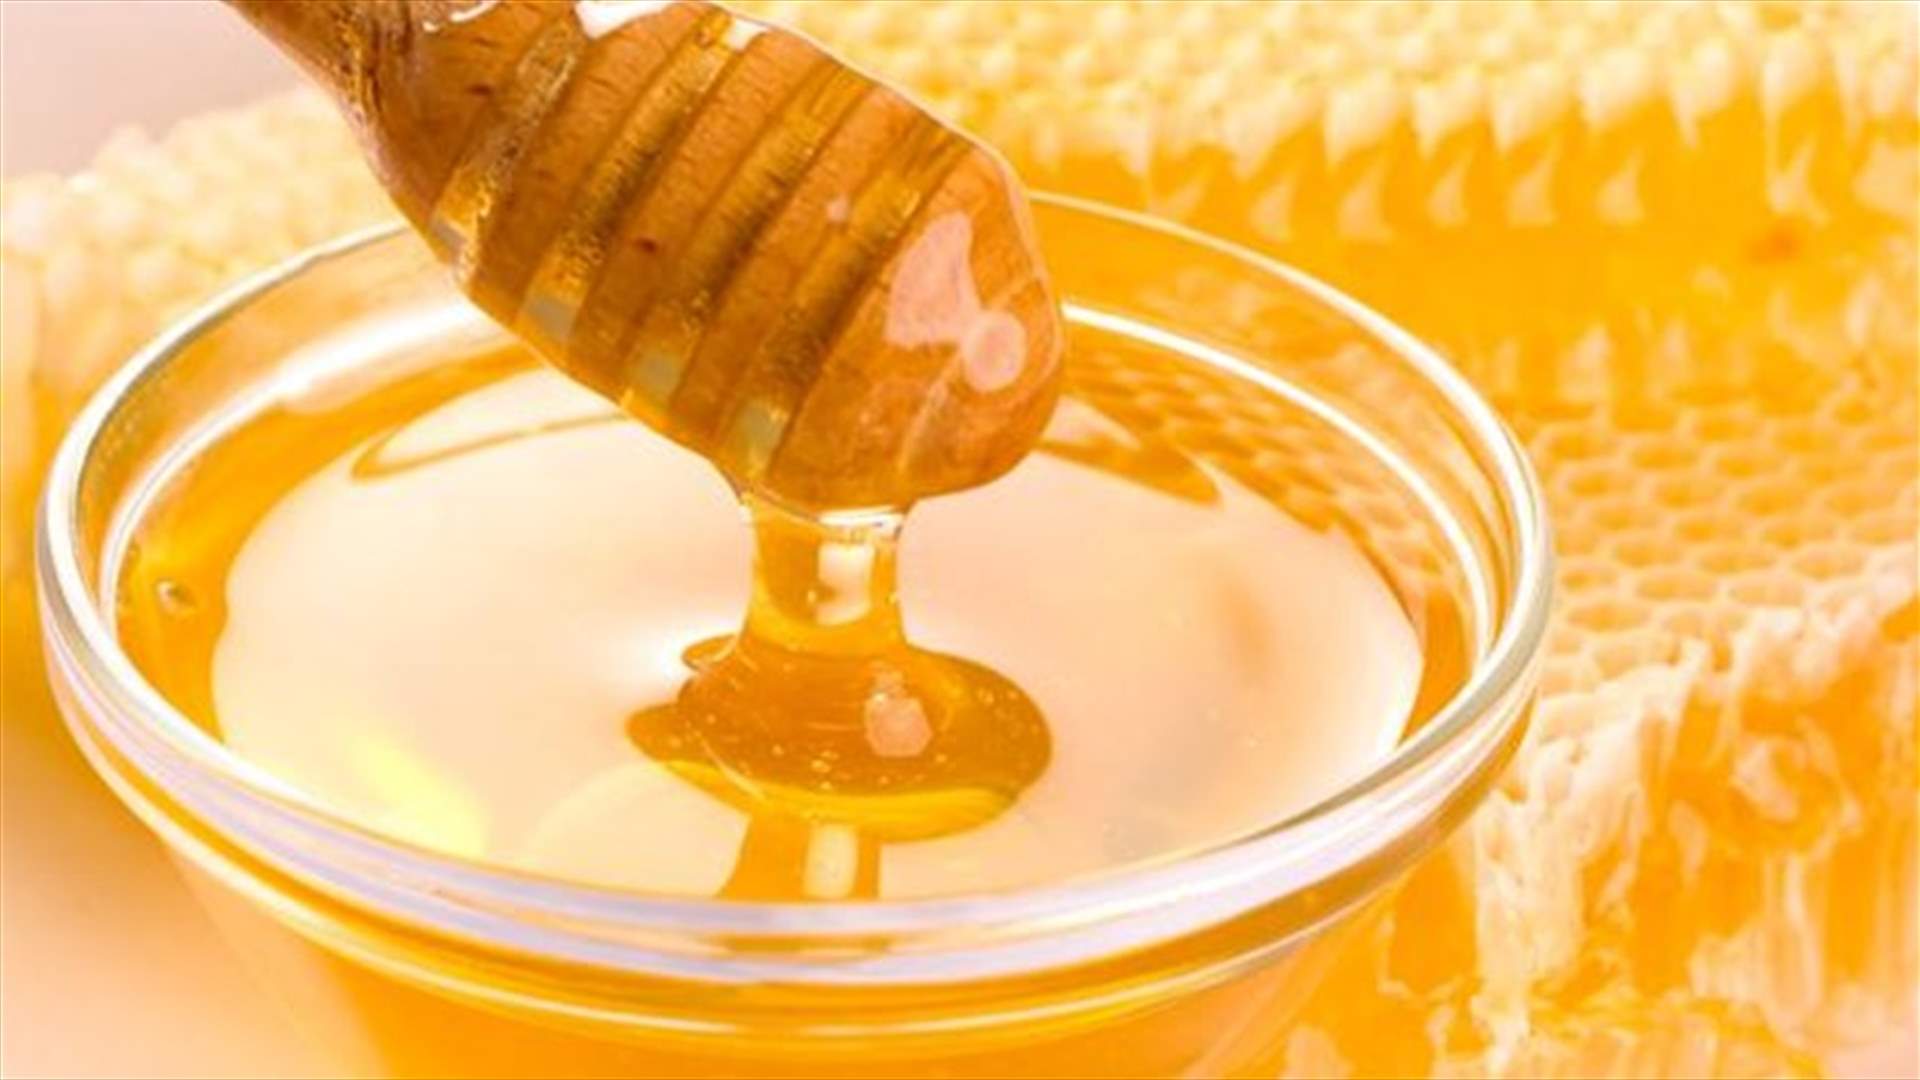 5 إستخدامات جماليّة للعسل... لمحاربة علامات التقدّم بالسنّ